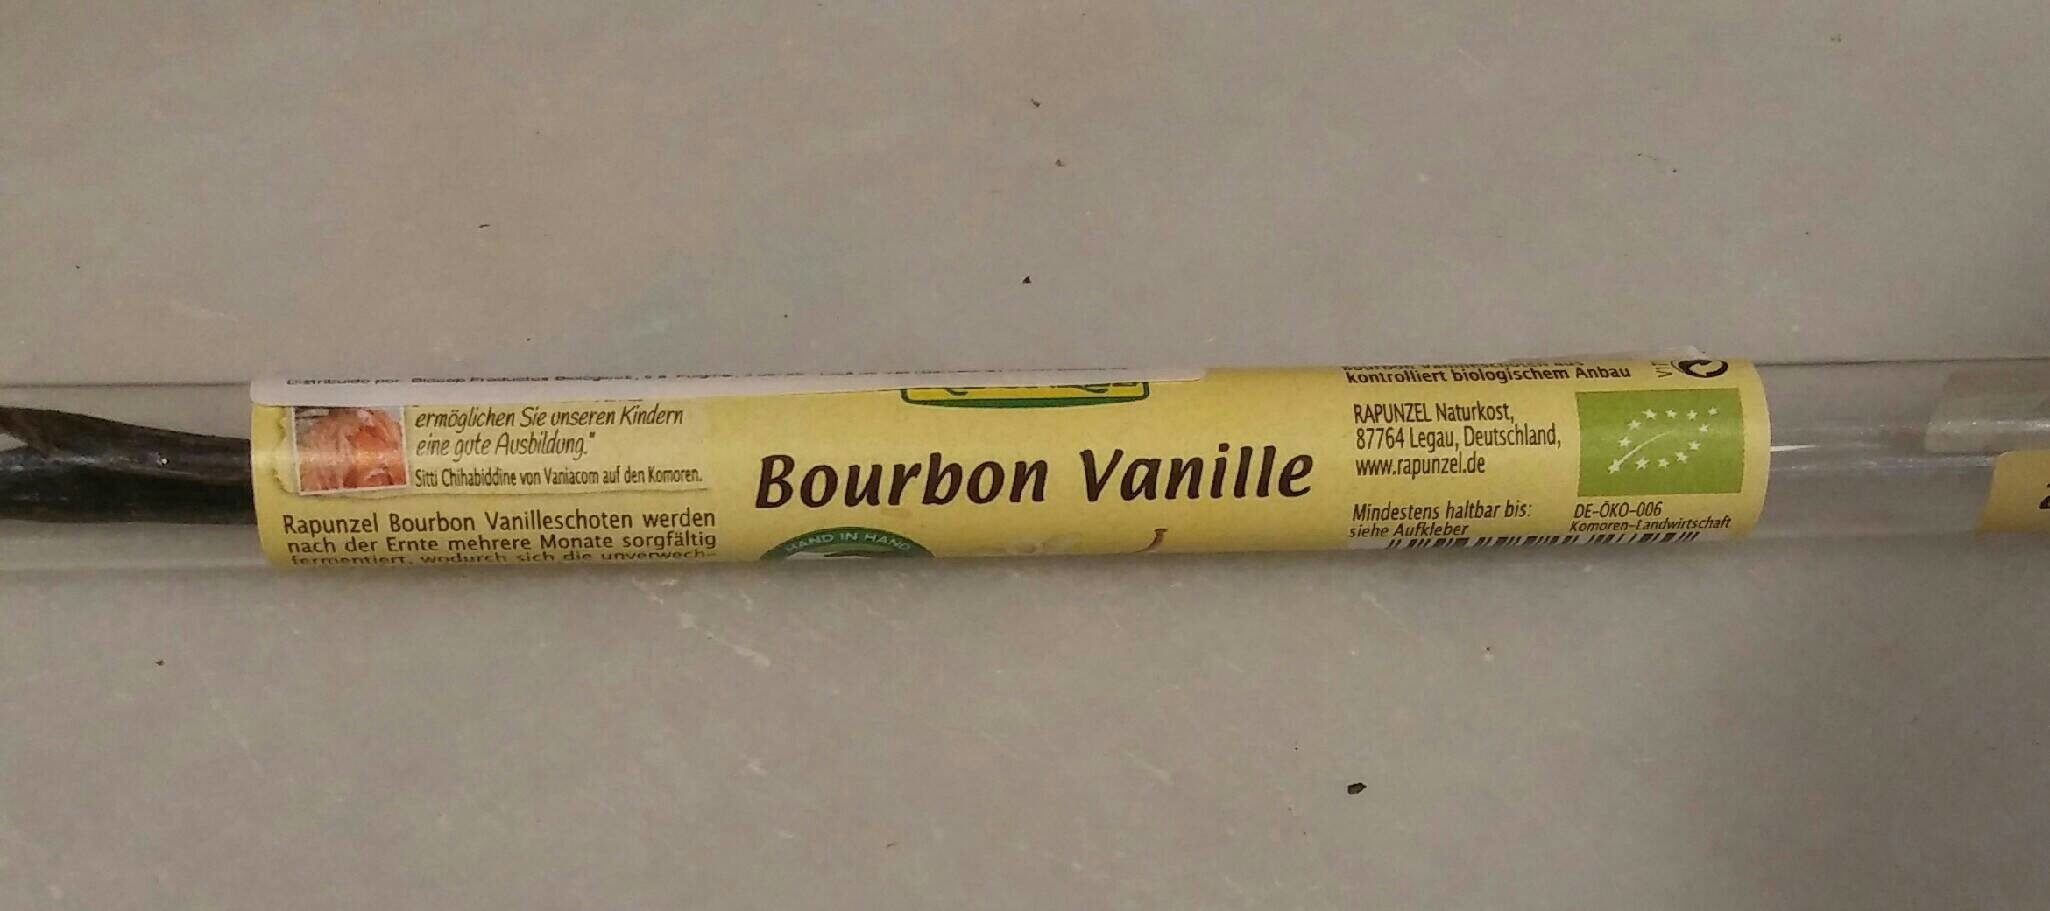 Bourbon Vanille Schoten - Producte - es